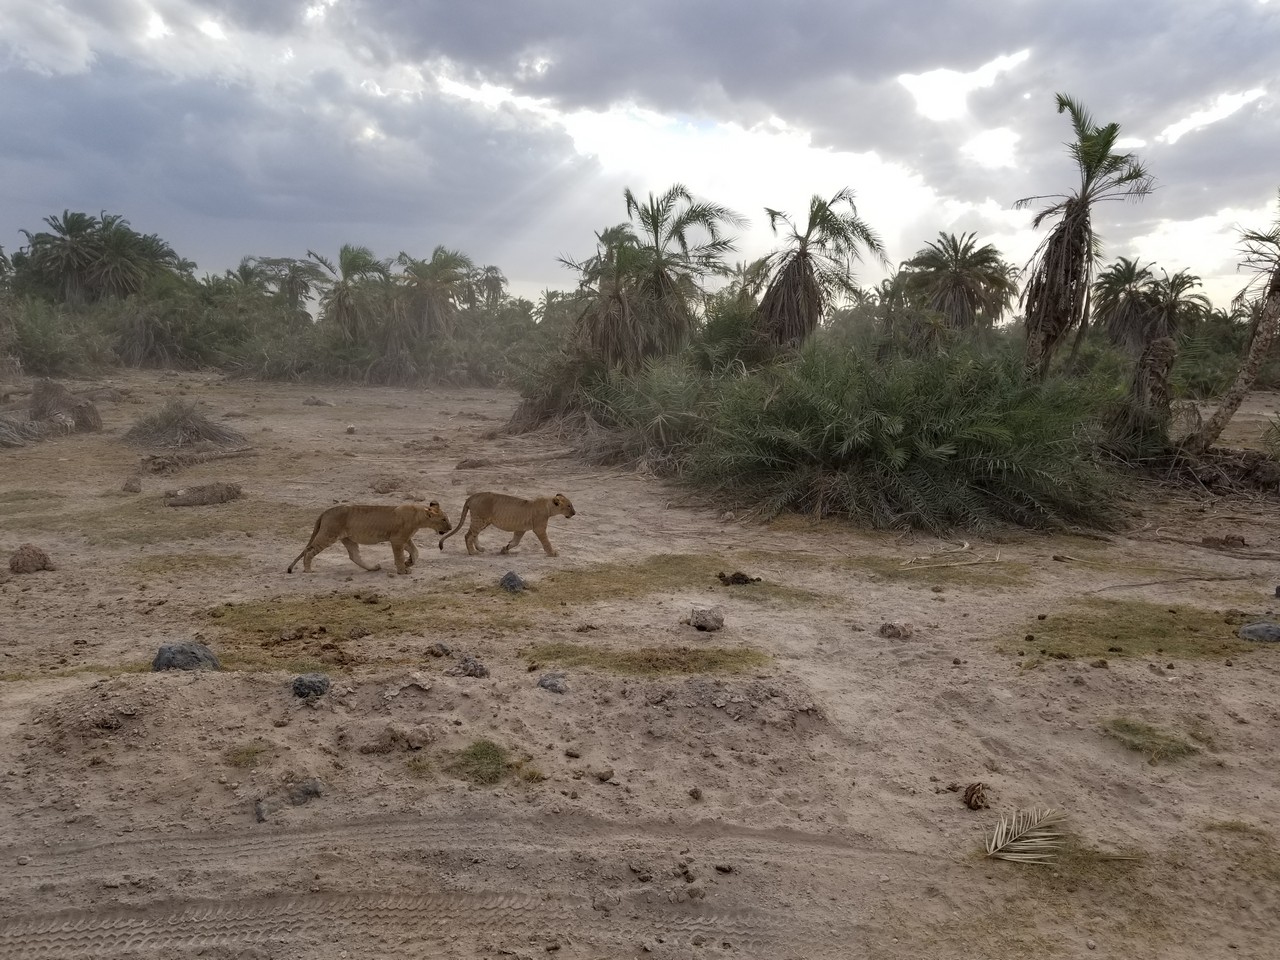 two lions walking in a dirt field